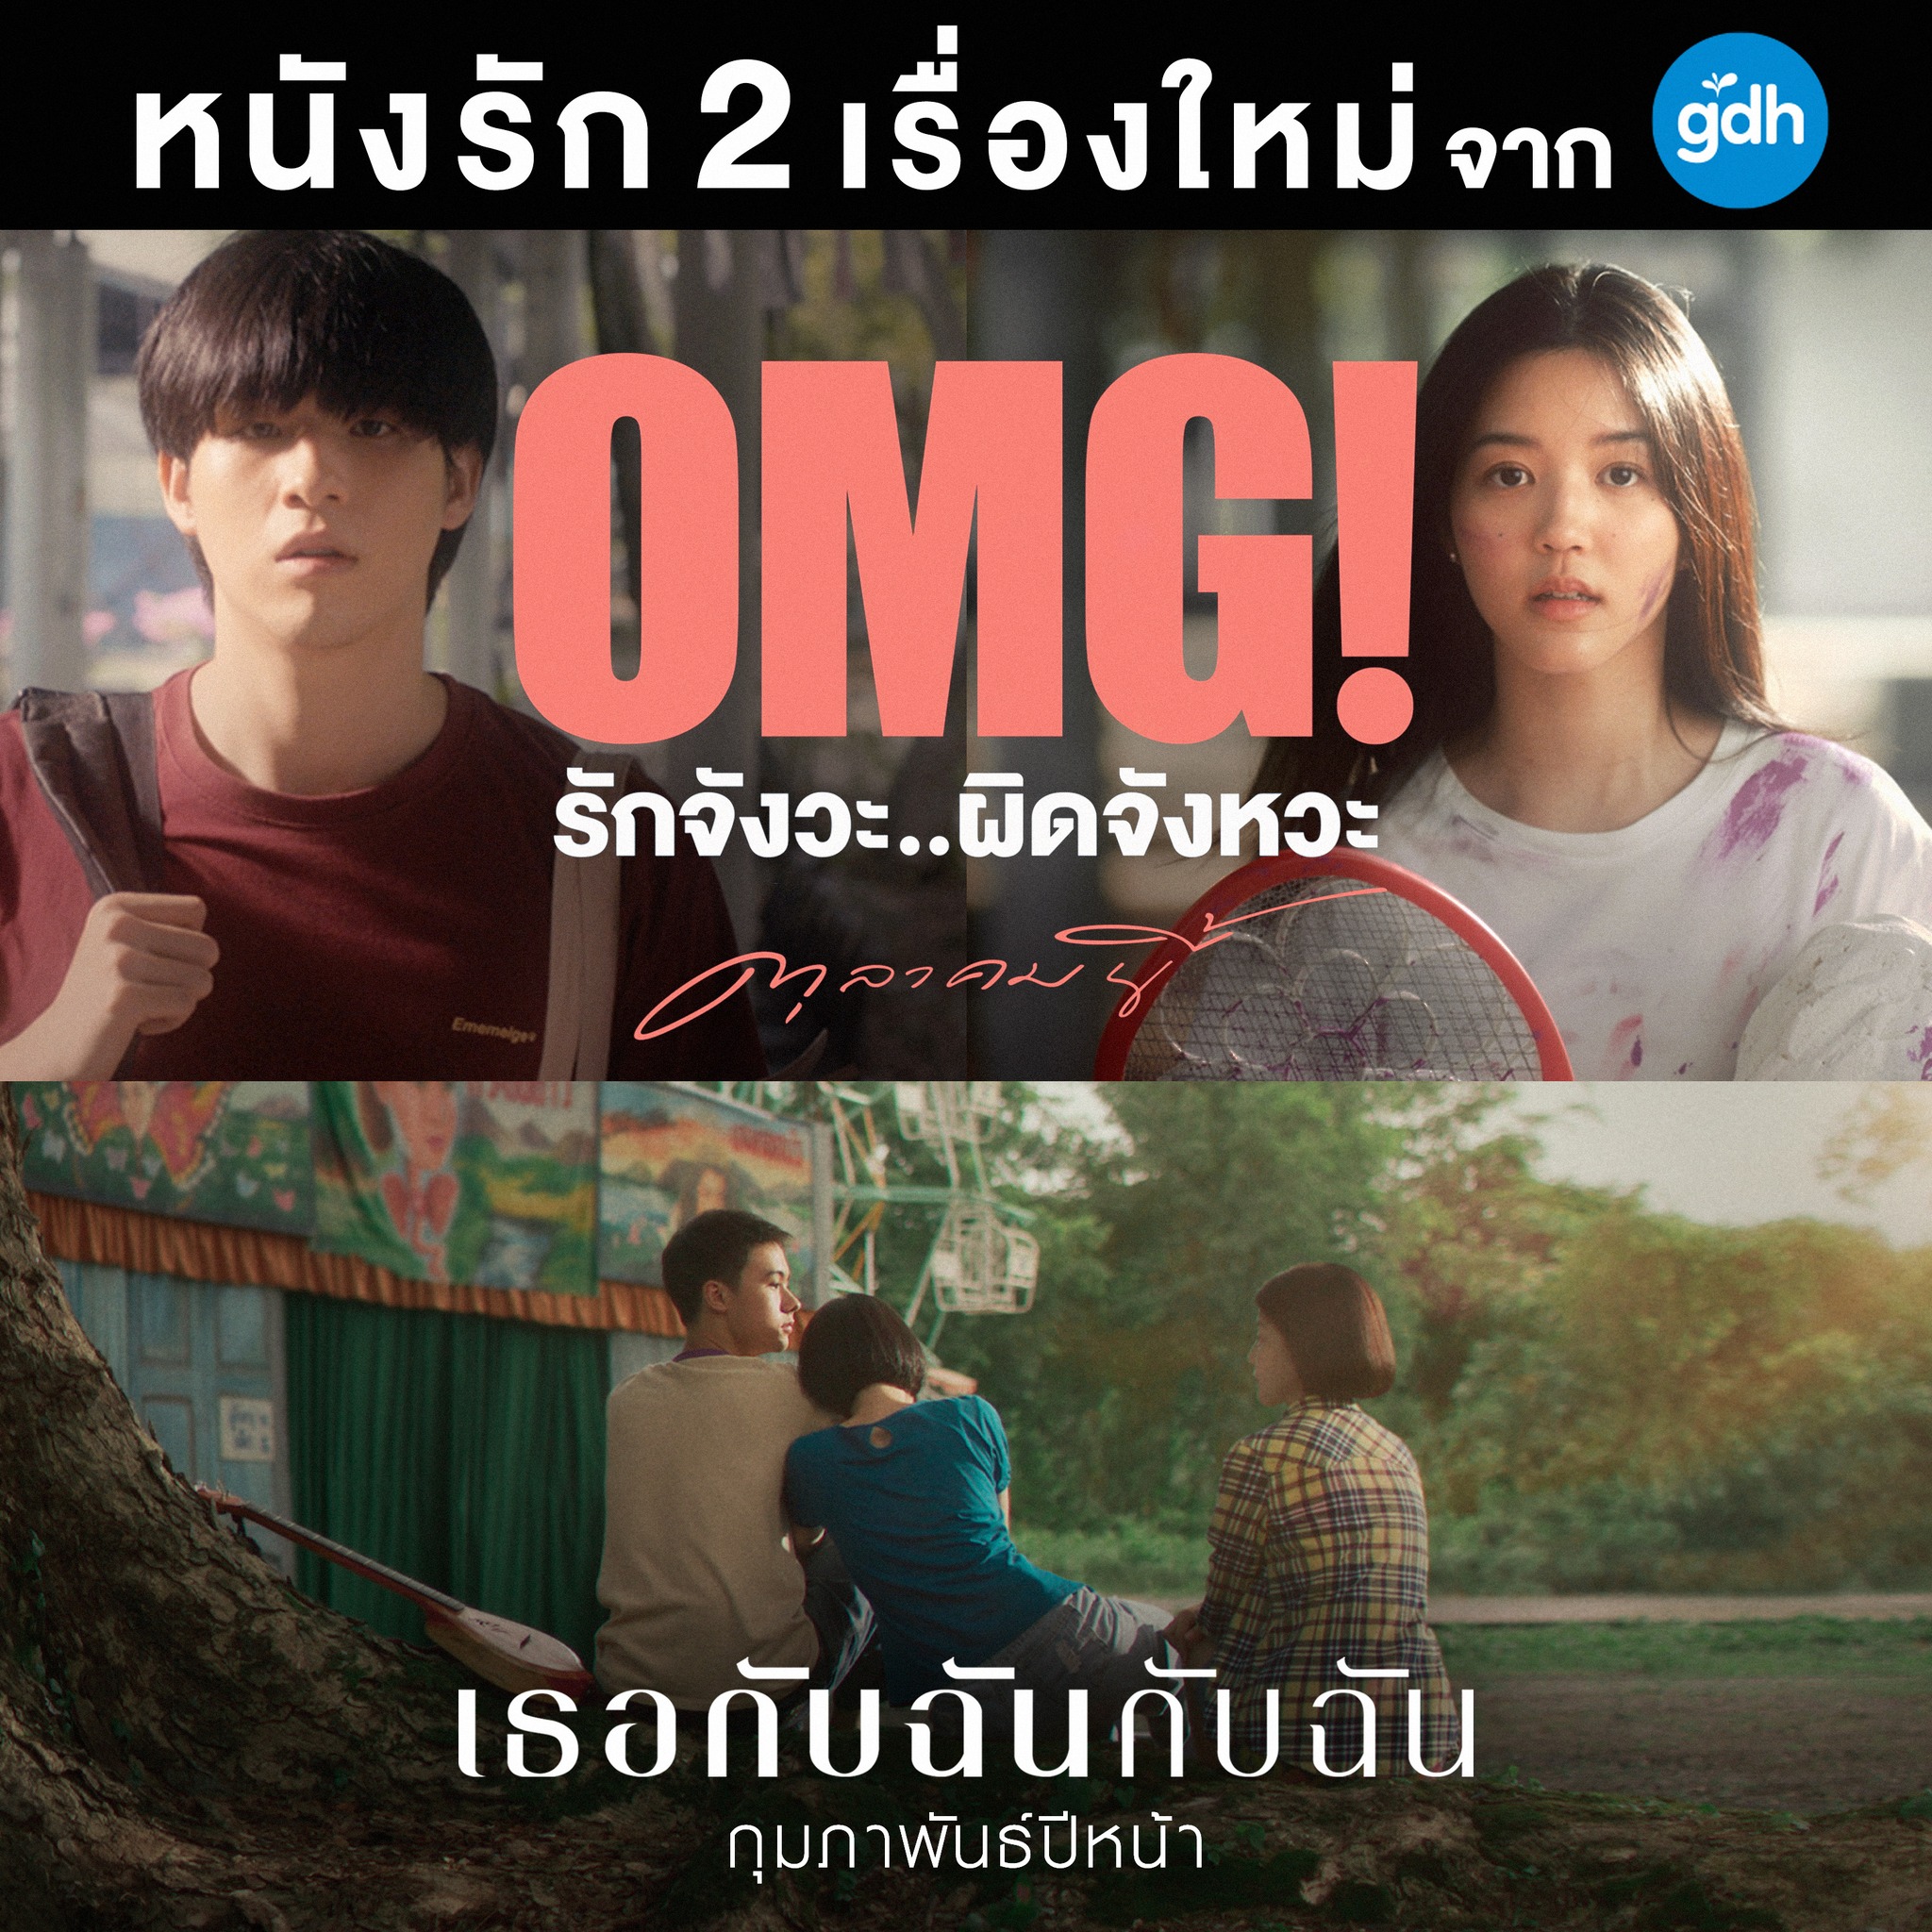 泰国GDH今年末还有2部待映电影:《我的女孩》《你和我》